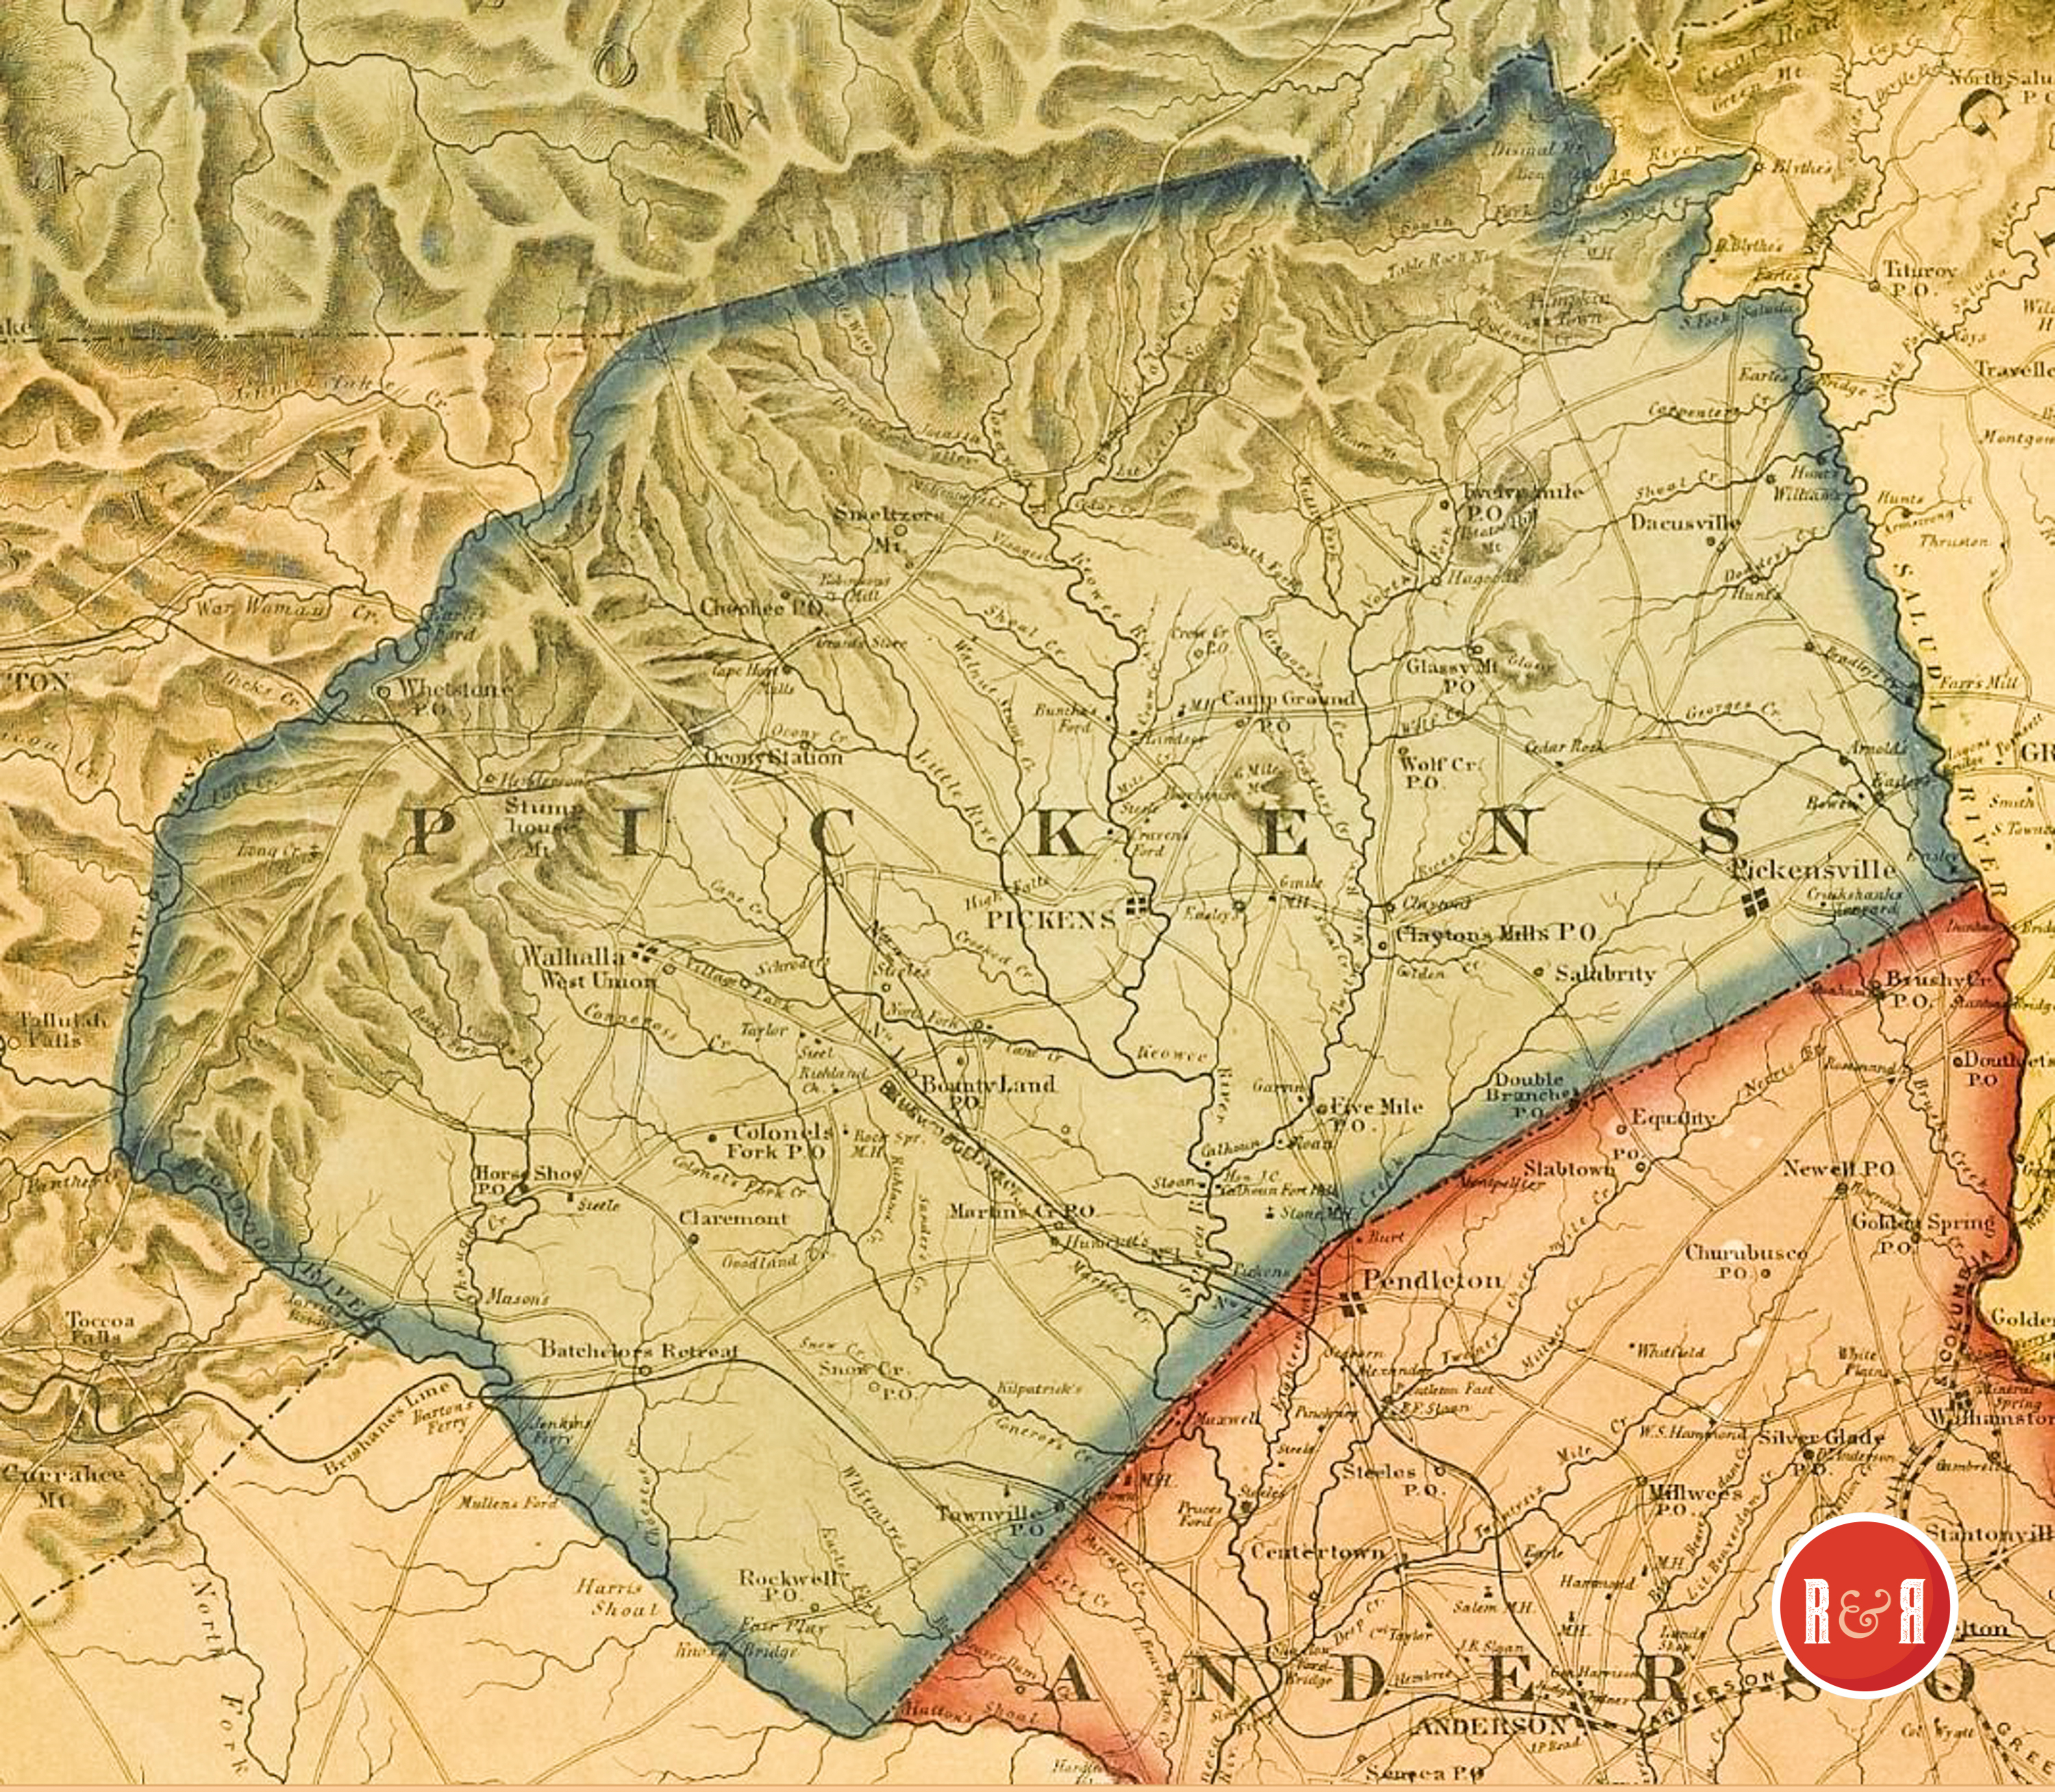 Colton's 1854 Map - Enlargement